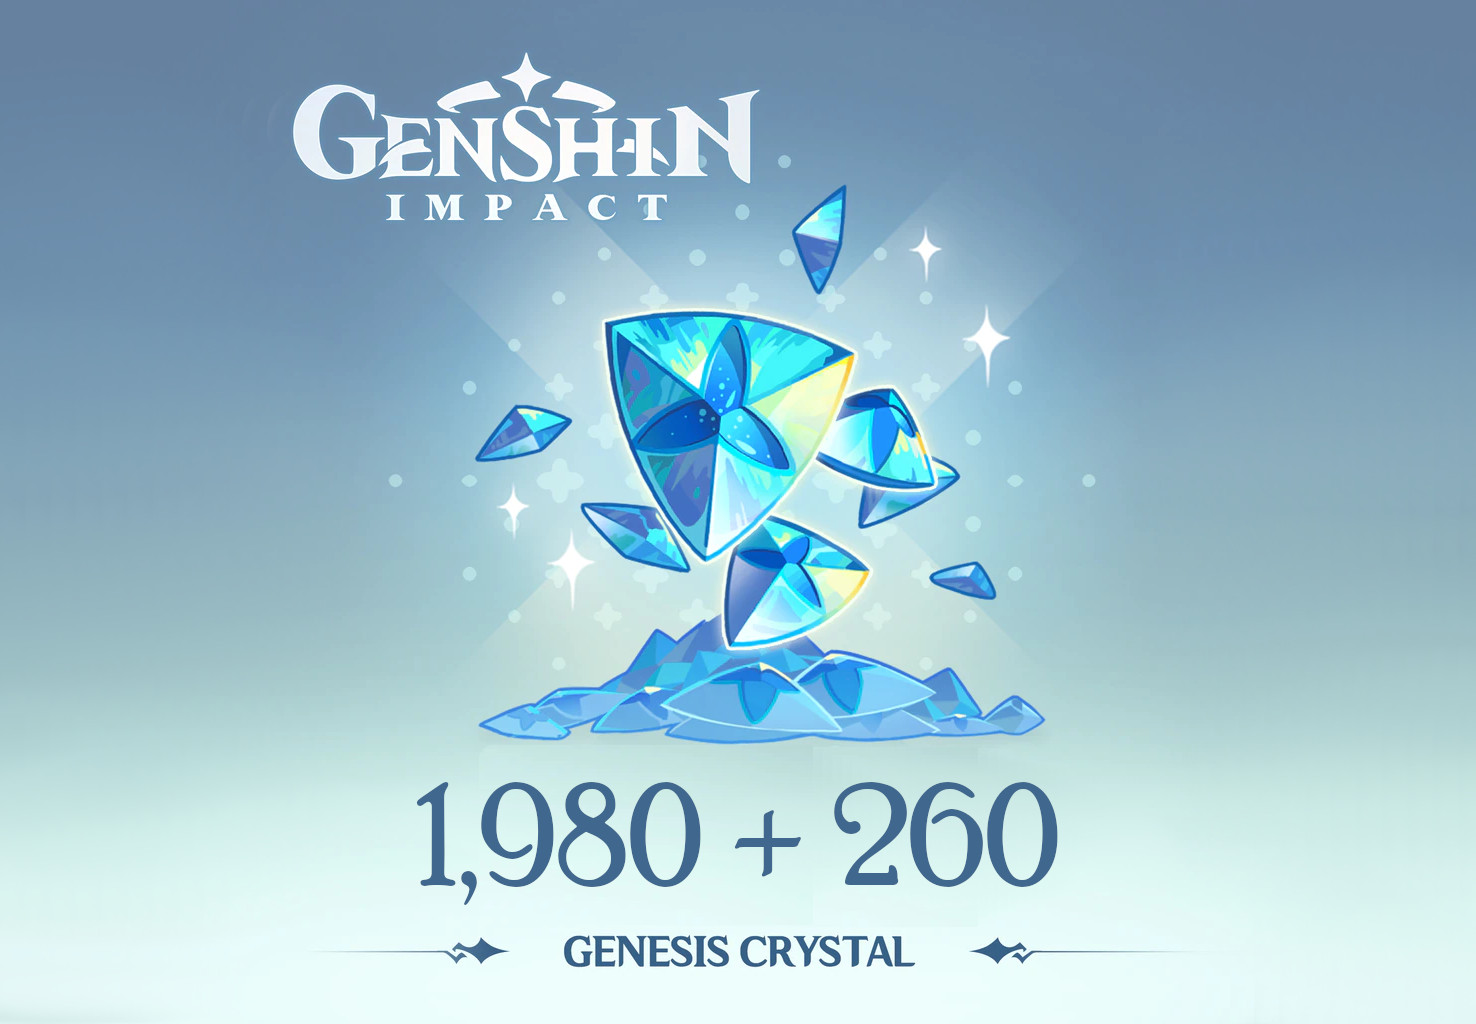 Genshin Impact - 1,980 + 260 Genesis Crystals Reidos Voucher, $33.9